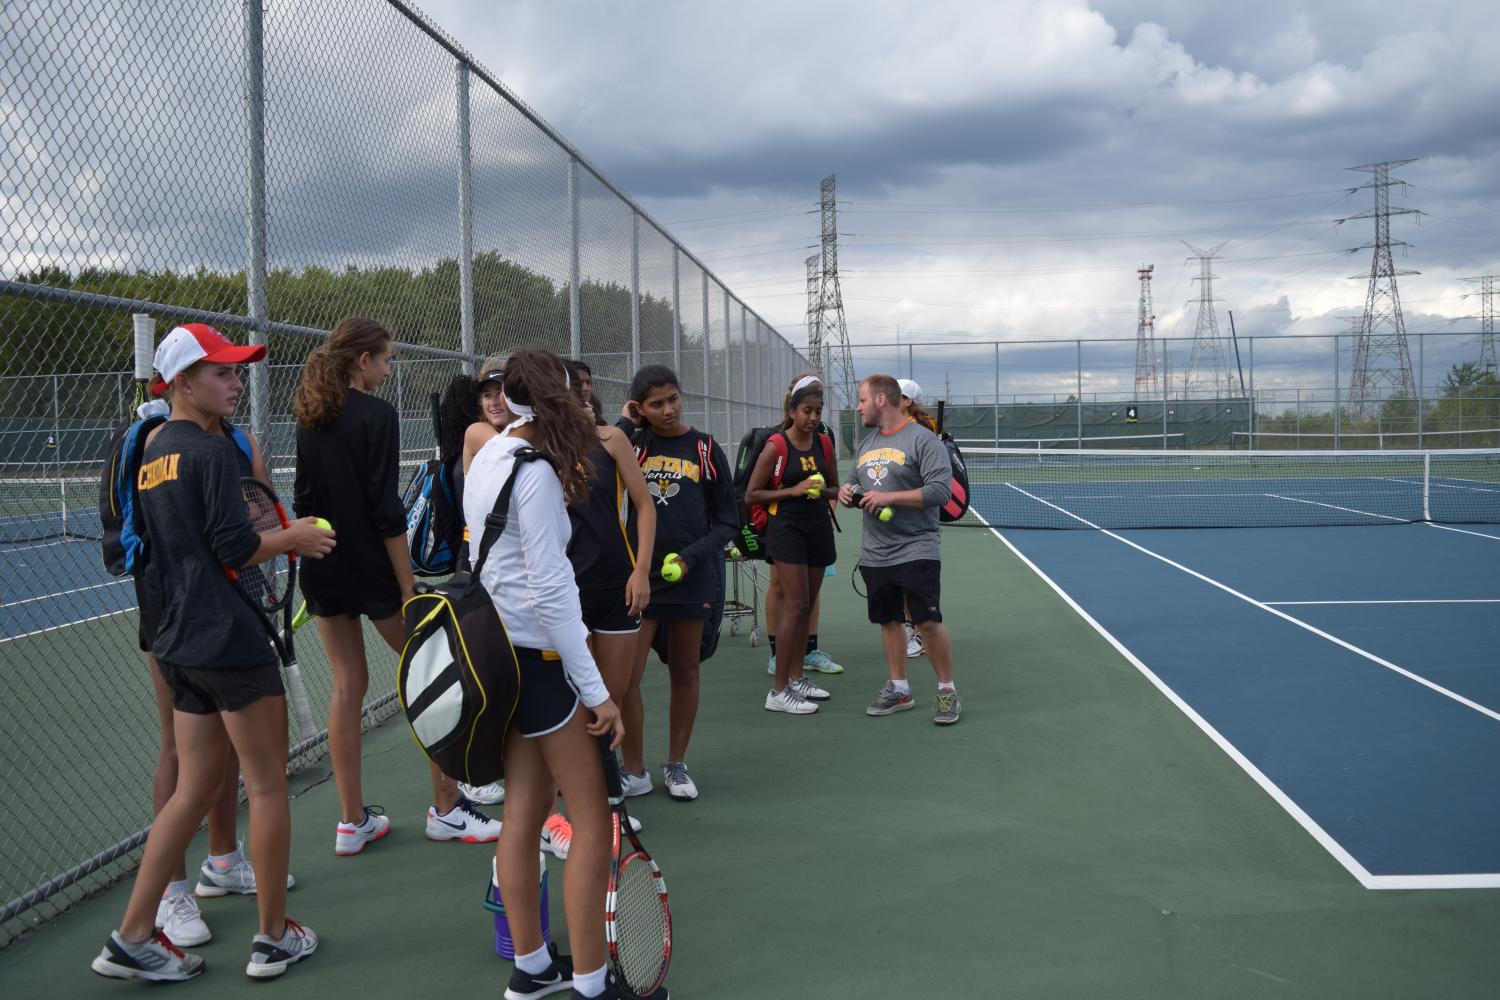 Girls’ tennis prepares for their busy season